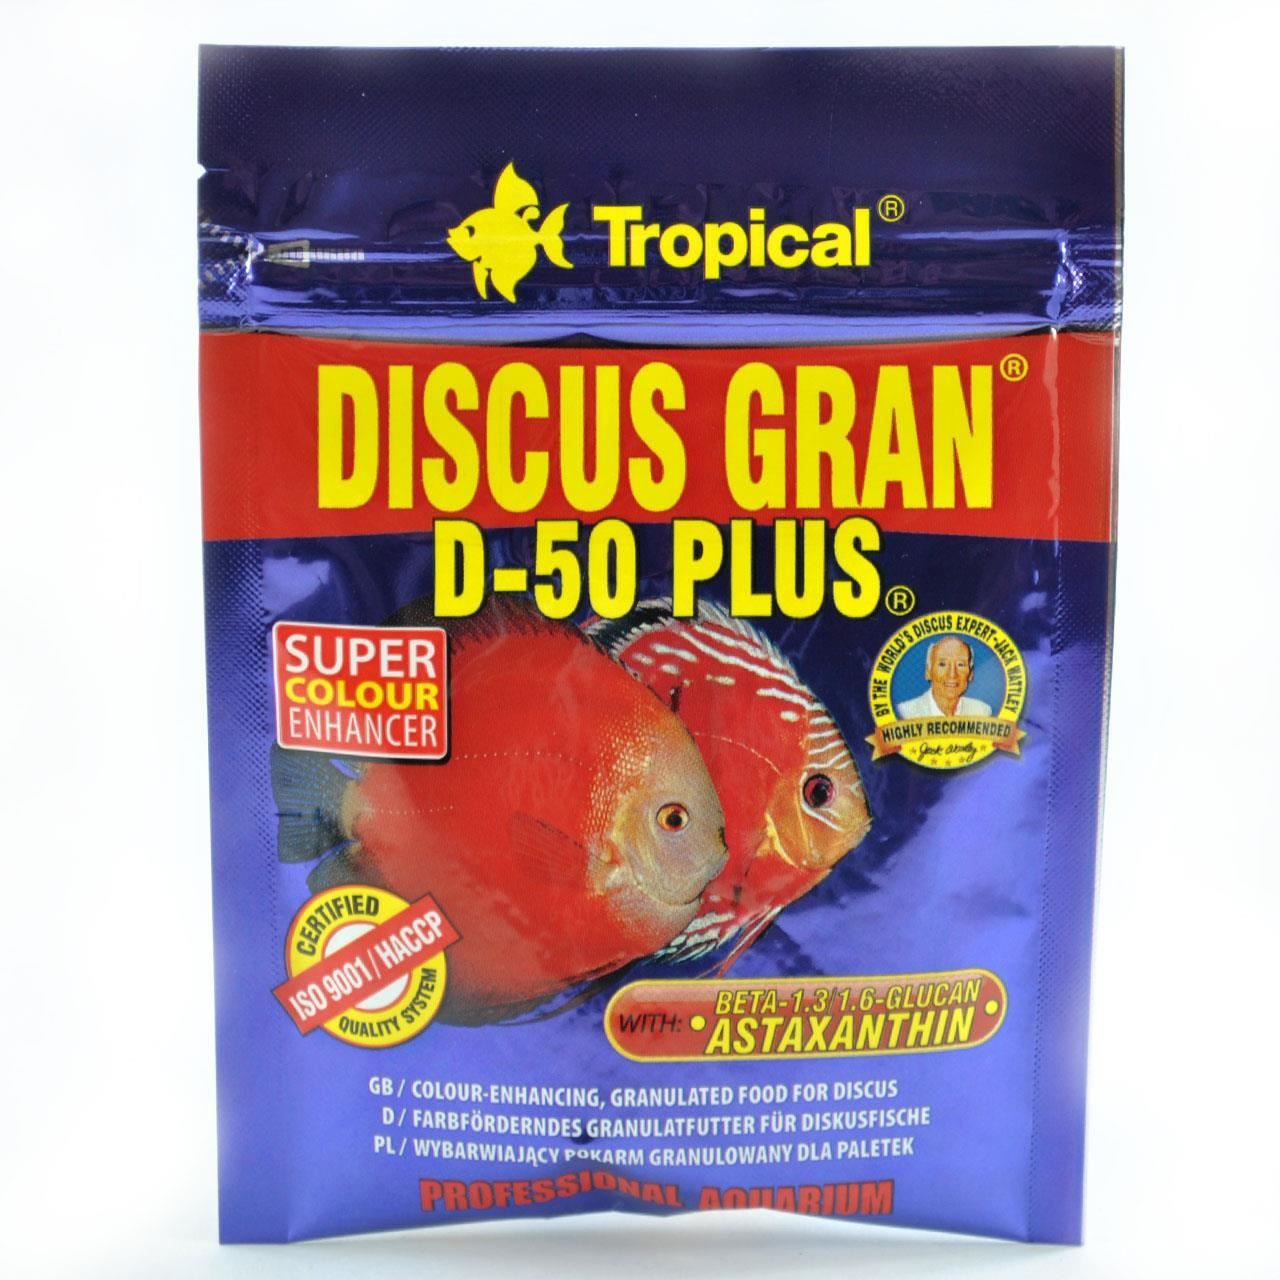 Tropical Discus Grant D-50 Plus, 20 g/ Plic